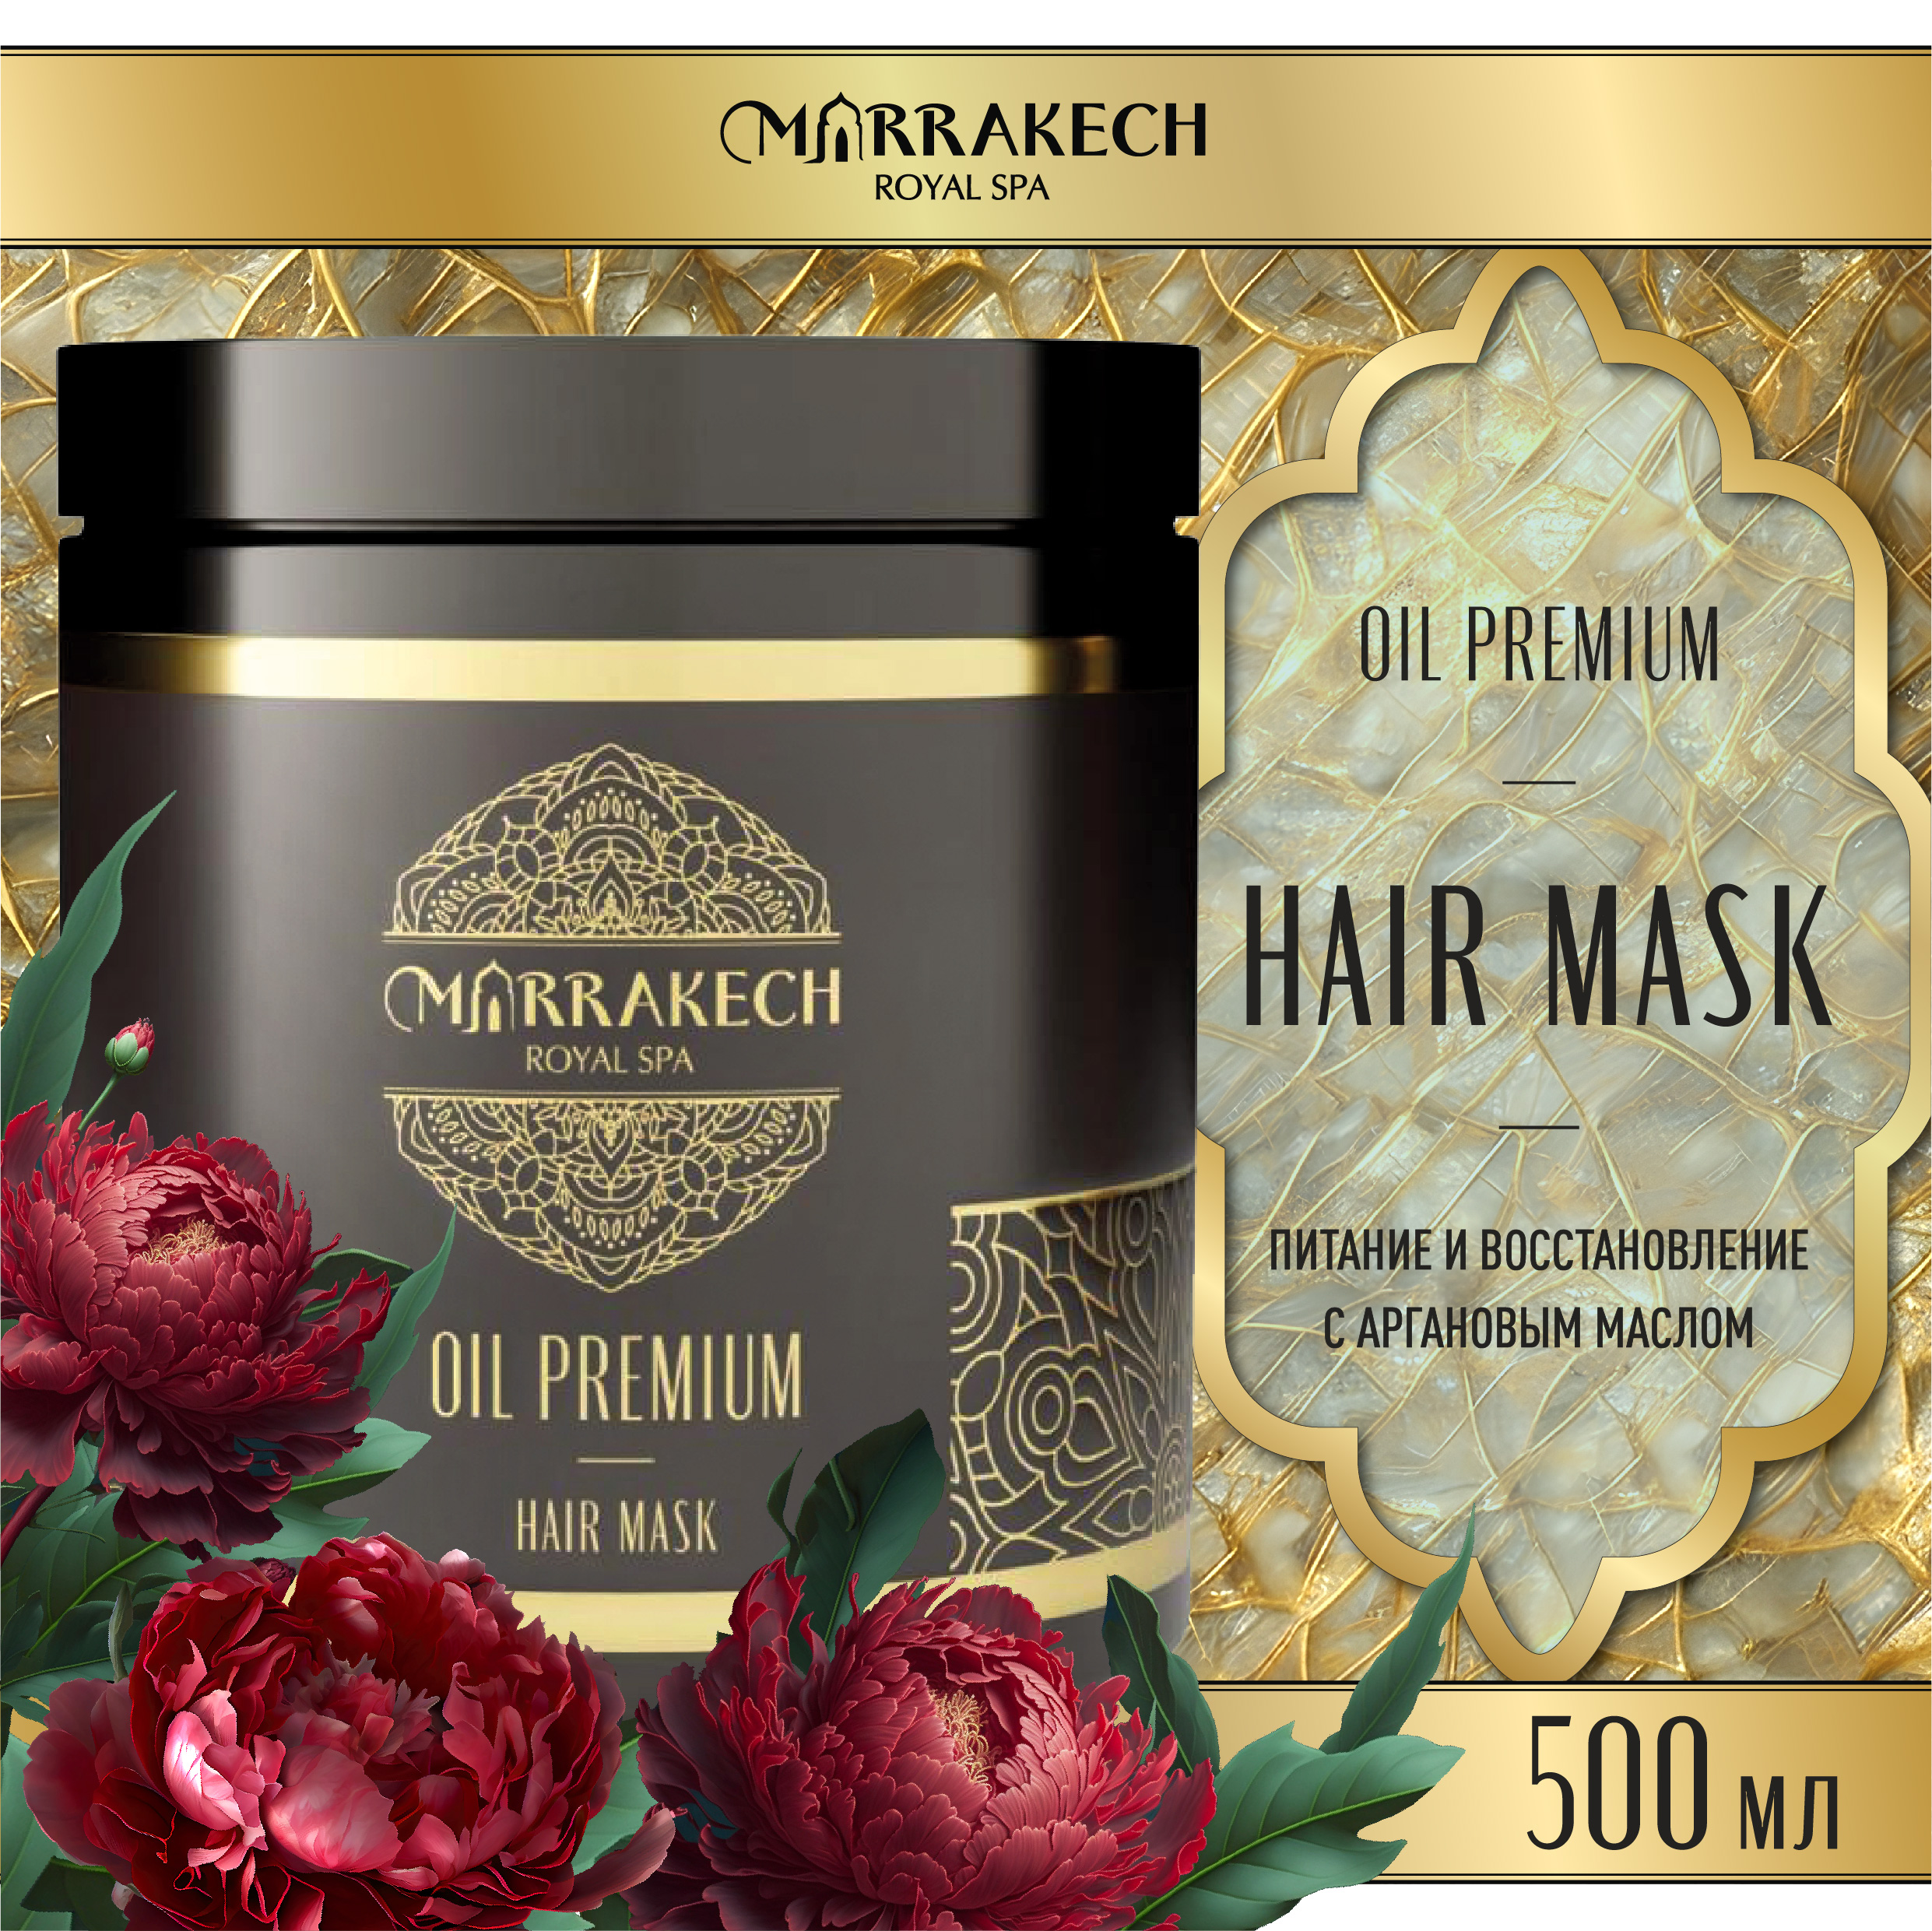 Маска для волос MARRAKECH ROYAL SPA питание и восстановление с аргановым маслом 500 мл tefia жемчужная маска для светлых волос myblond 250 0